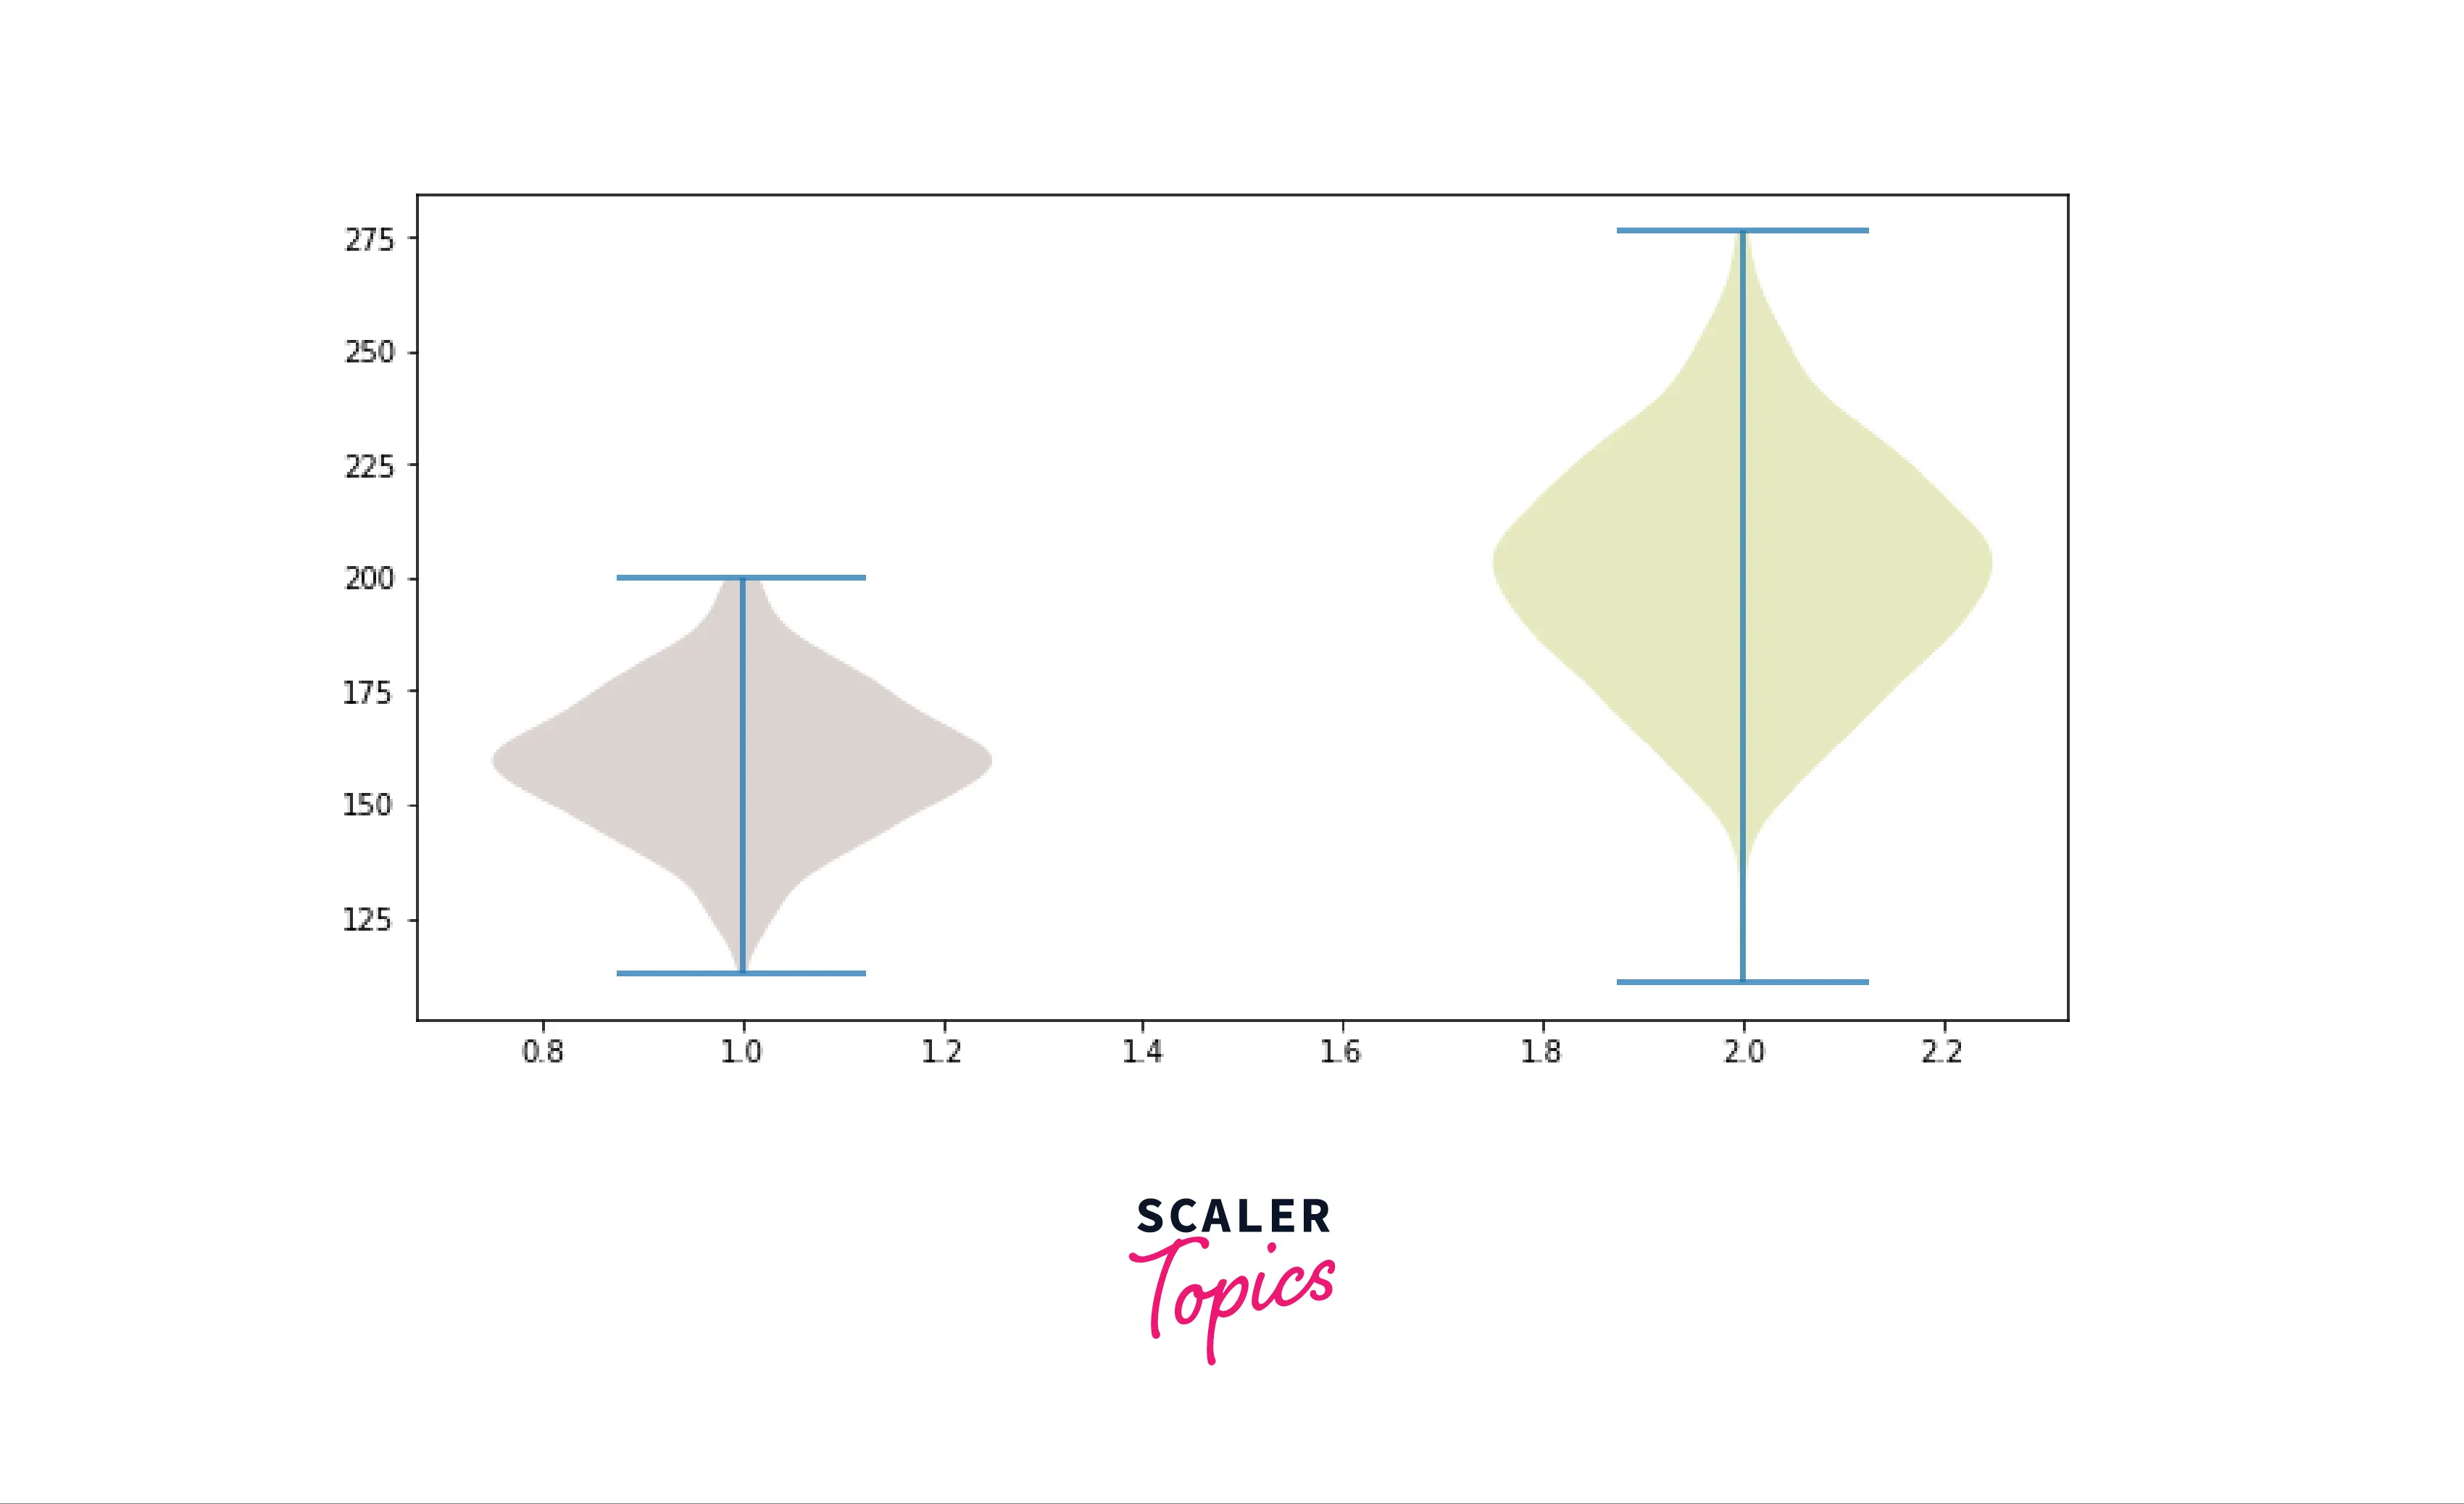 Violin plot from random data